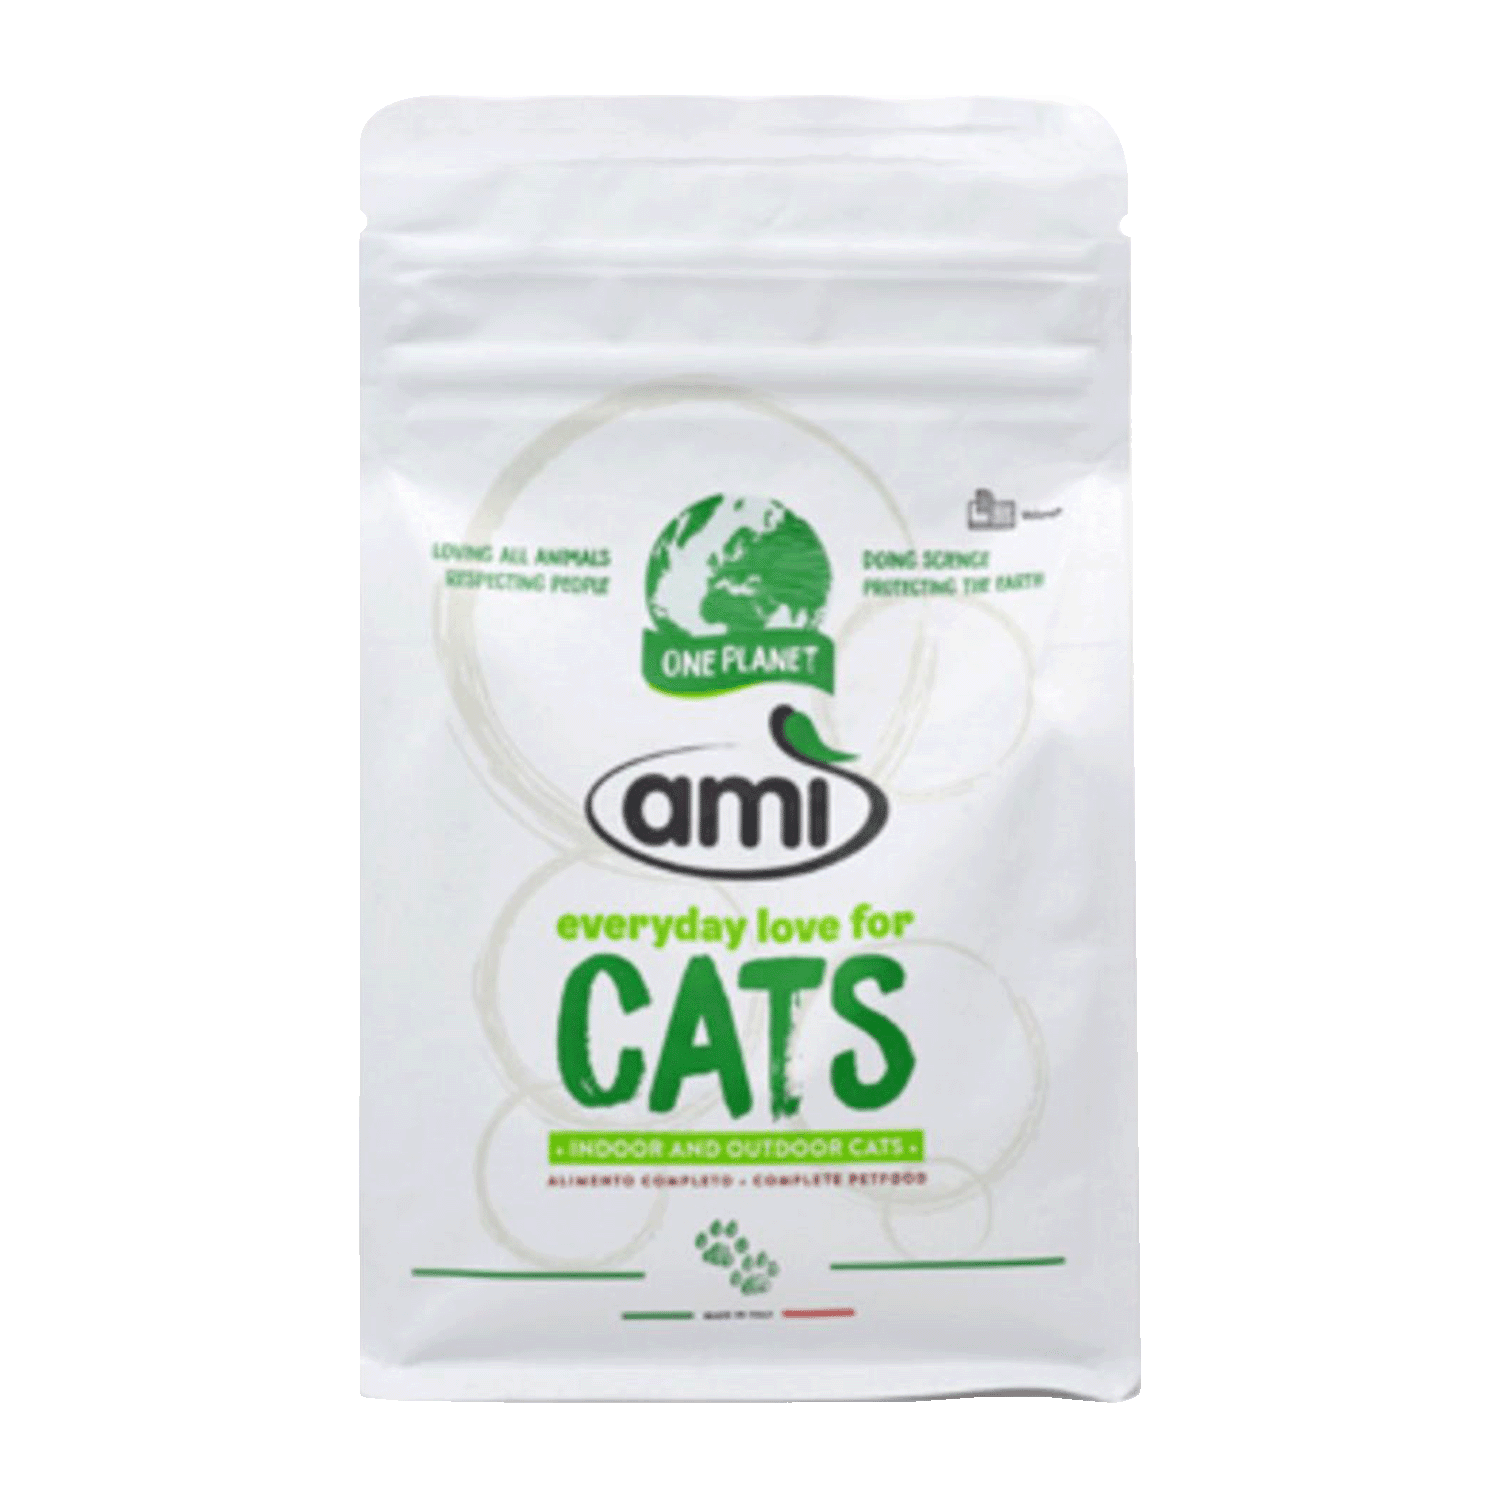 CAT Cat Dry Food, 300g